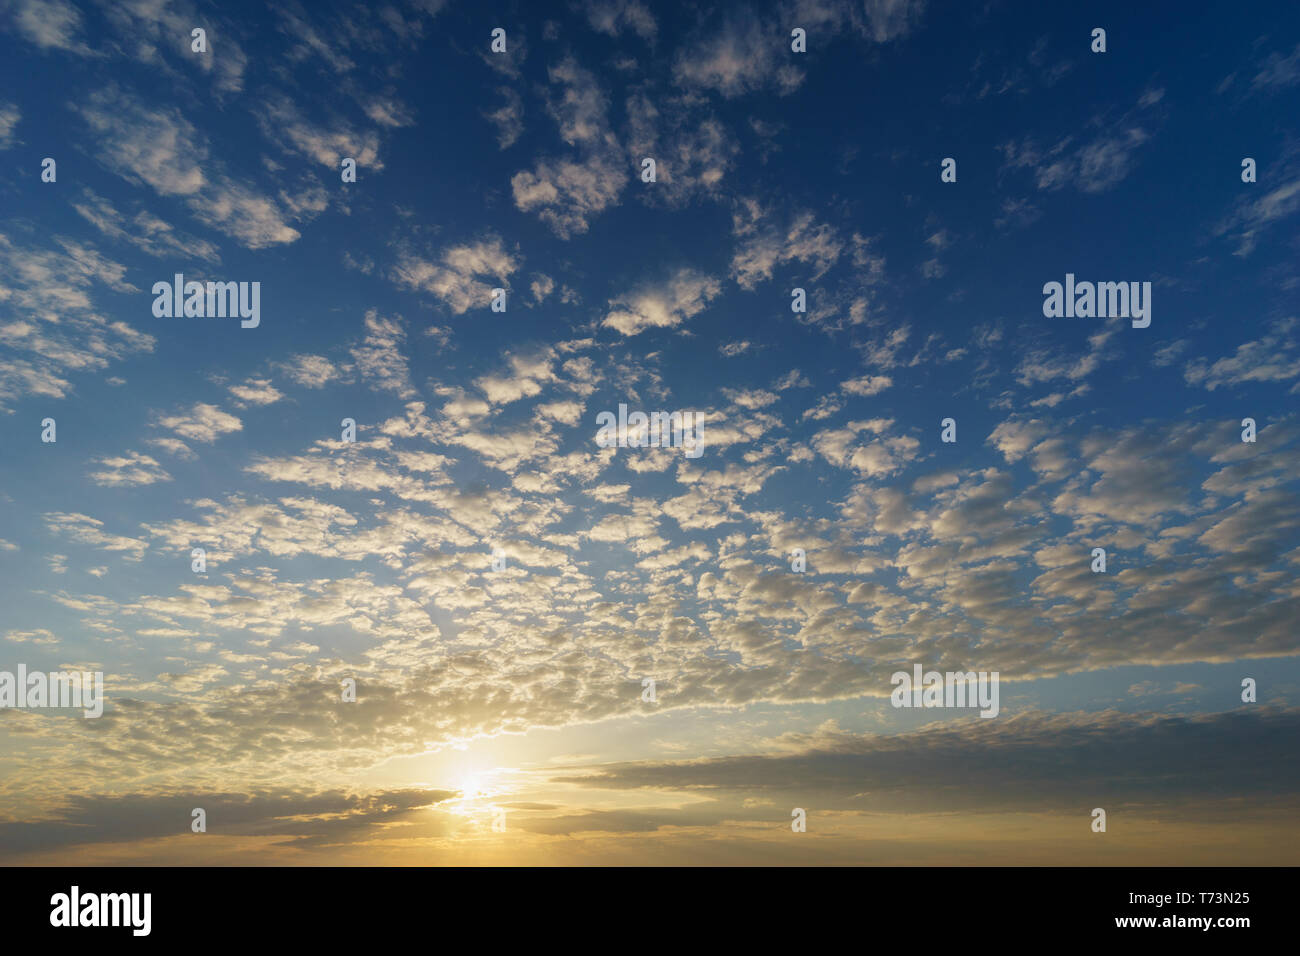 Sol naciente en un cielo azul con nubes cirrocúmulos, natural de fondo Foto de stock